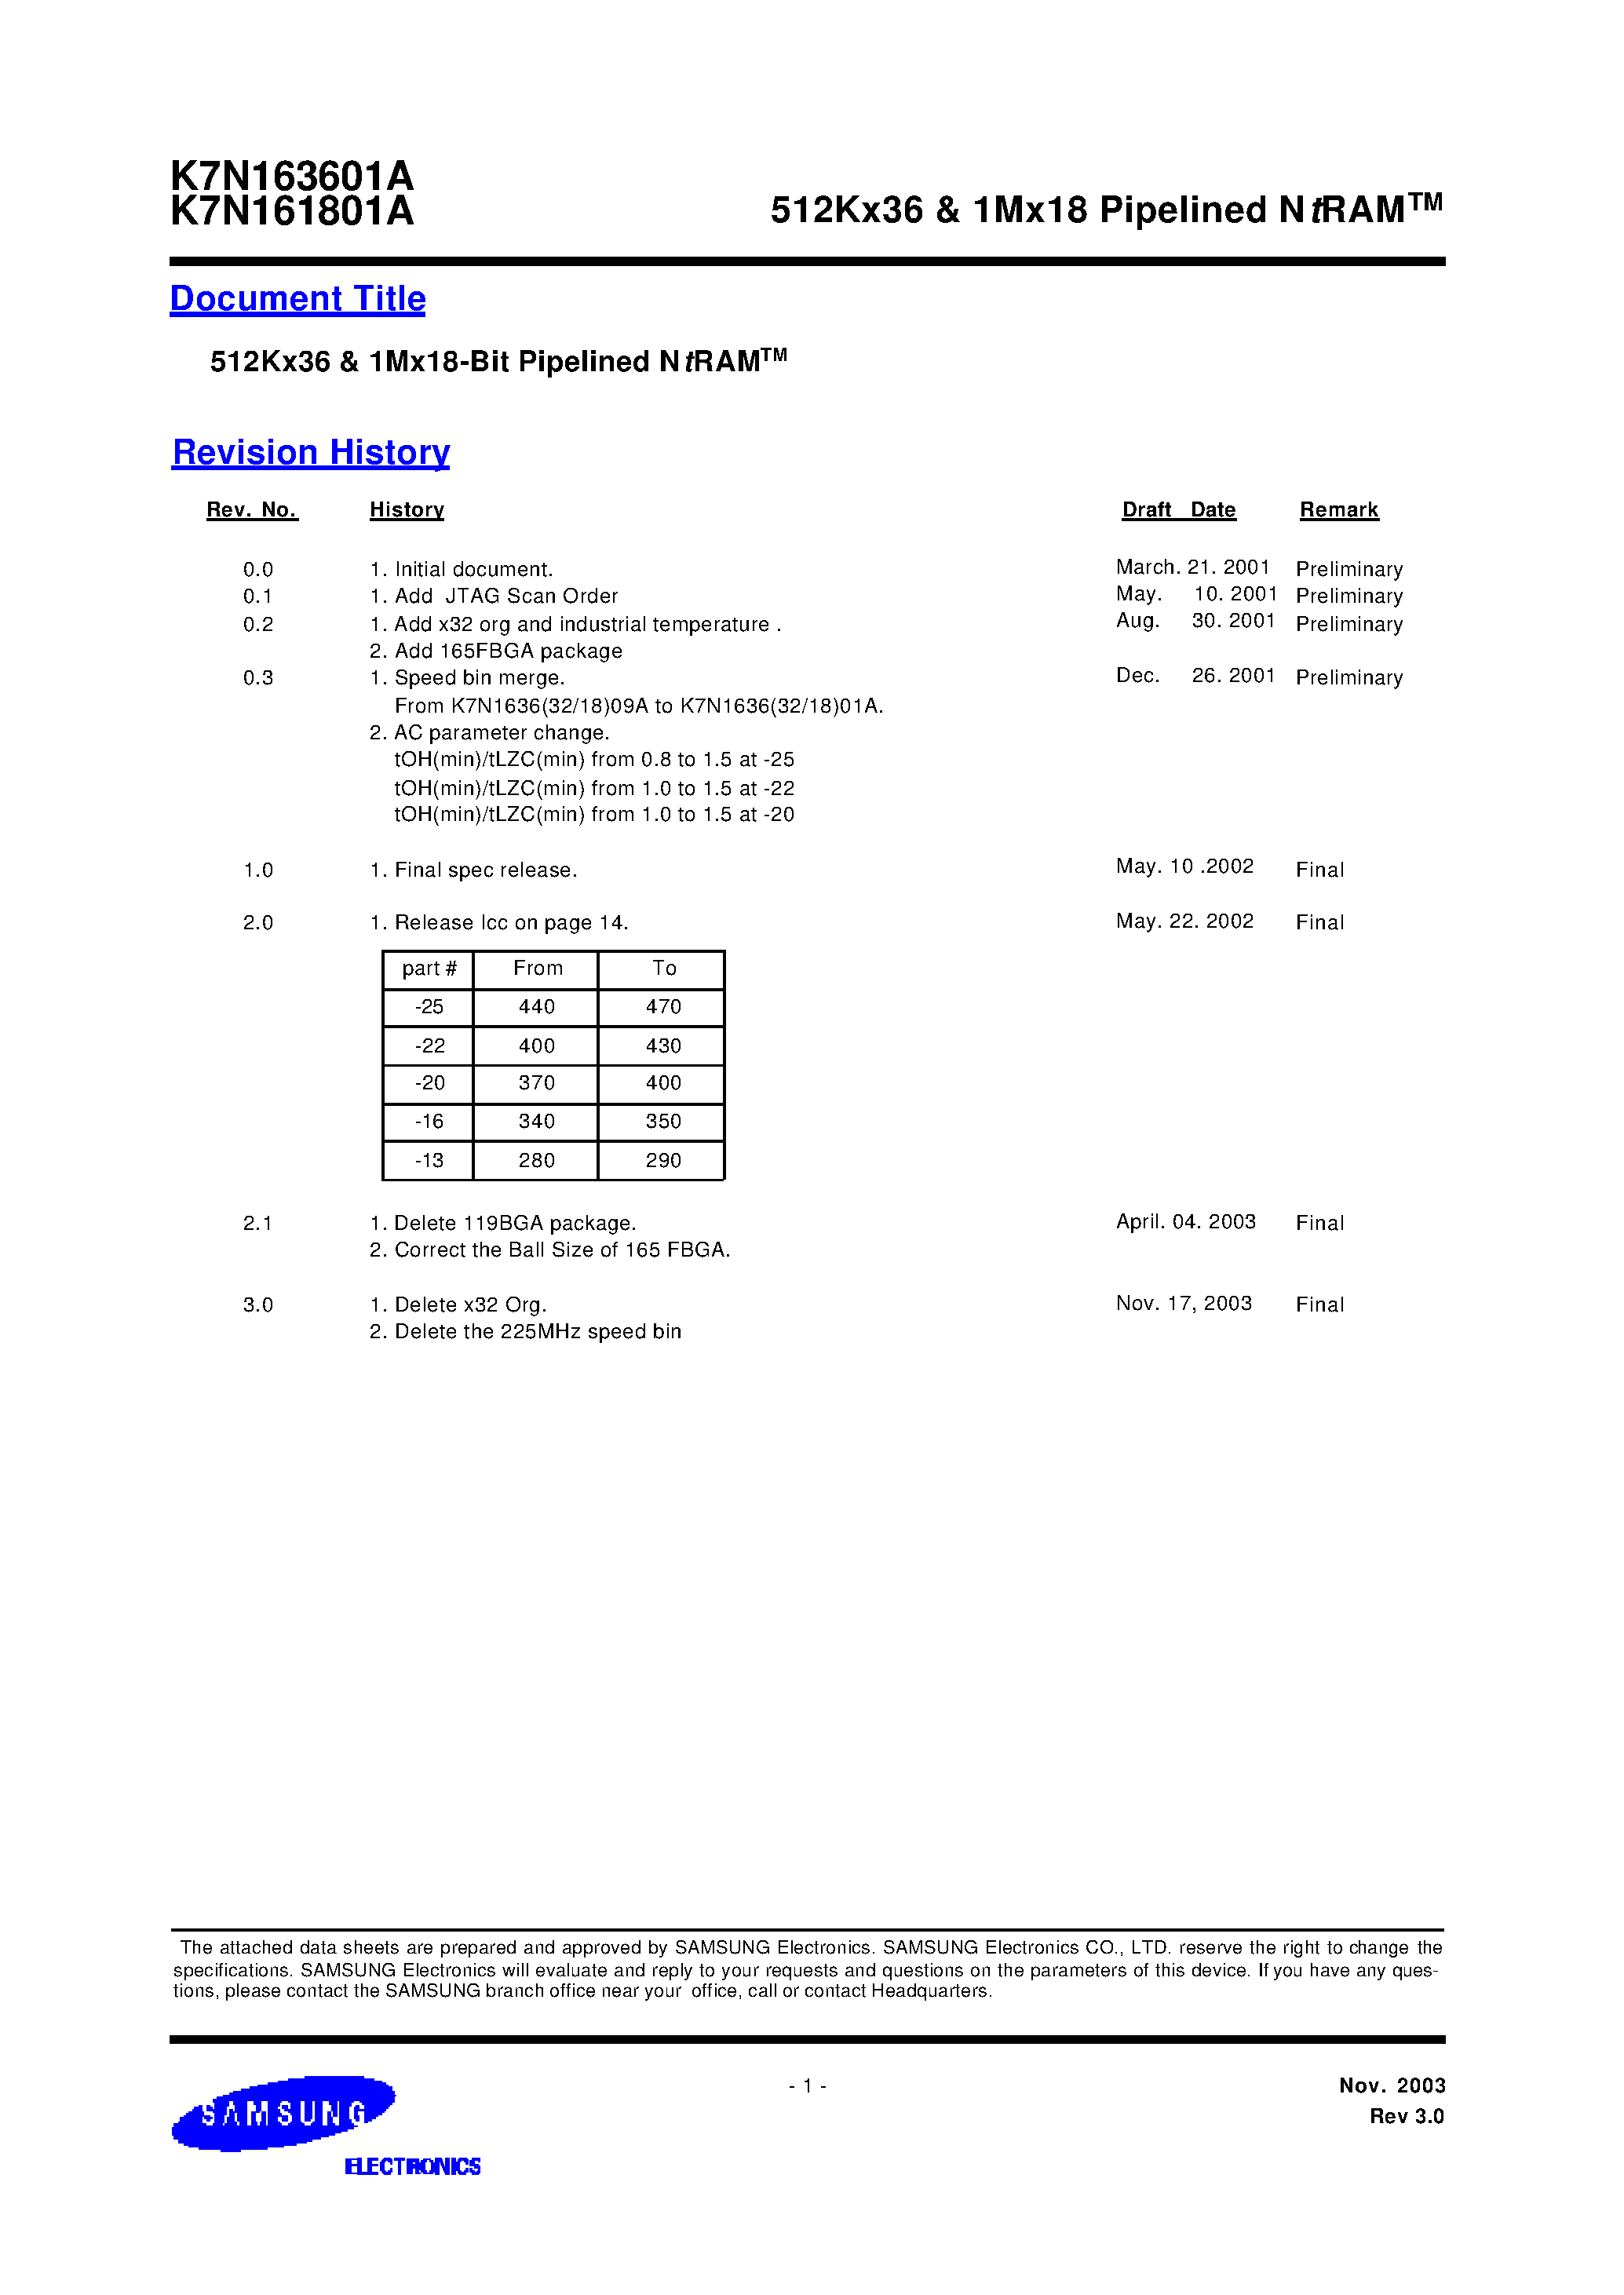 Даташит K7N161801A-Q(F)C(I)25-512Kx36 & 1Mx18 Pipelined NtRAM страница 1